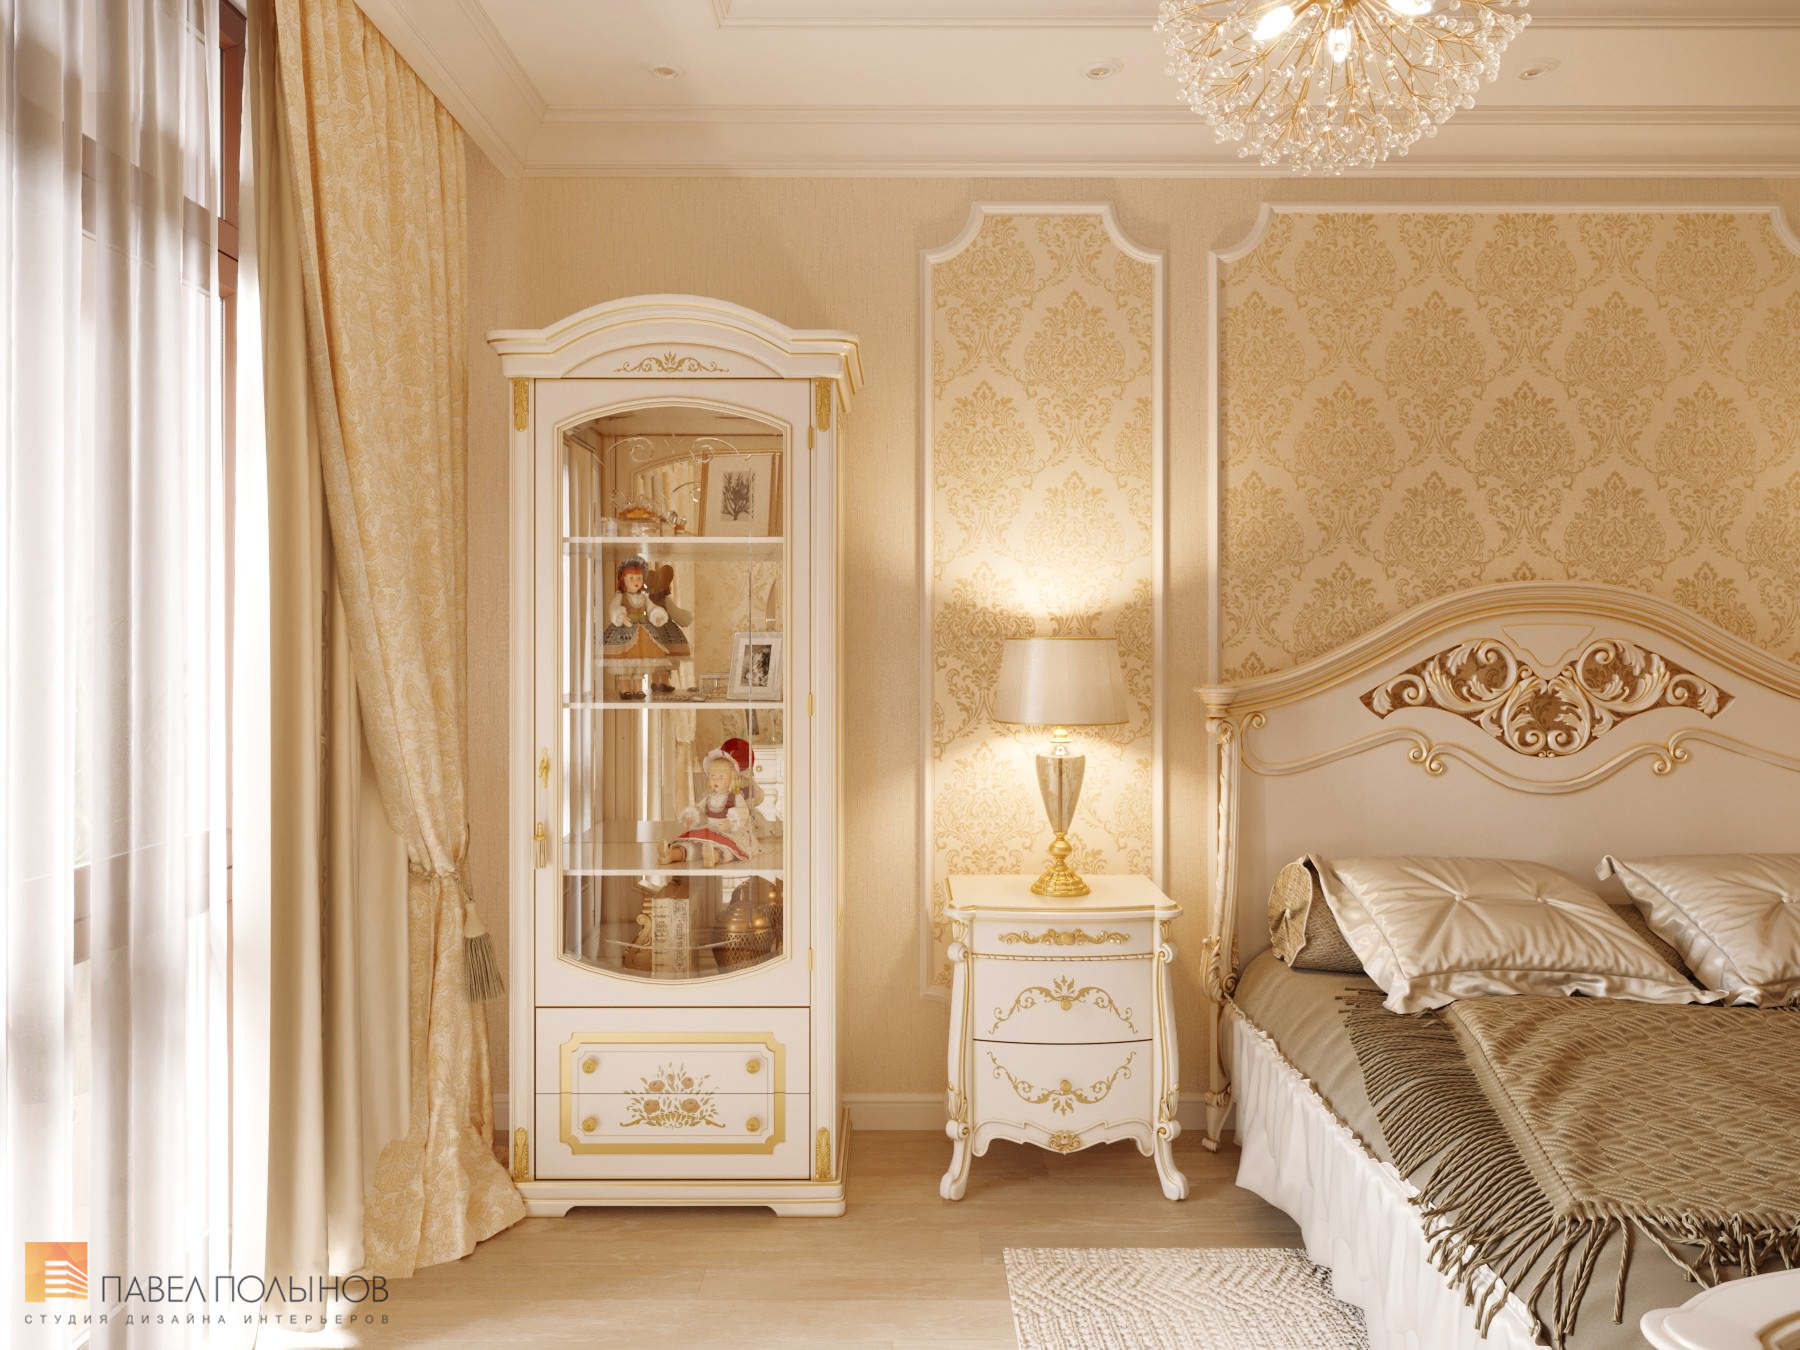 Фото спальня из проекта «Квартира в классическом стиле в ЖК «Русский дом», 144 кв.м.»